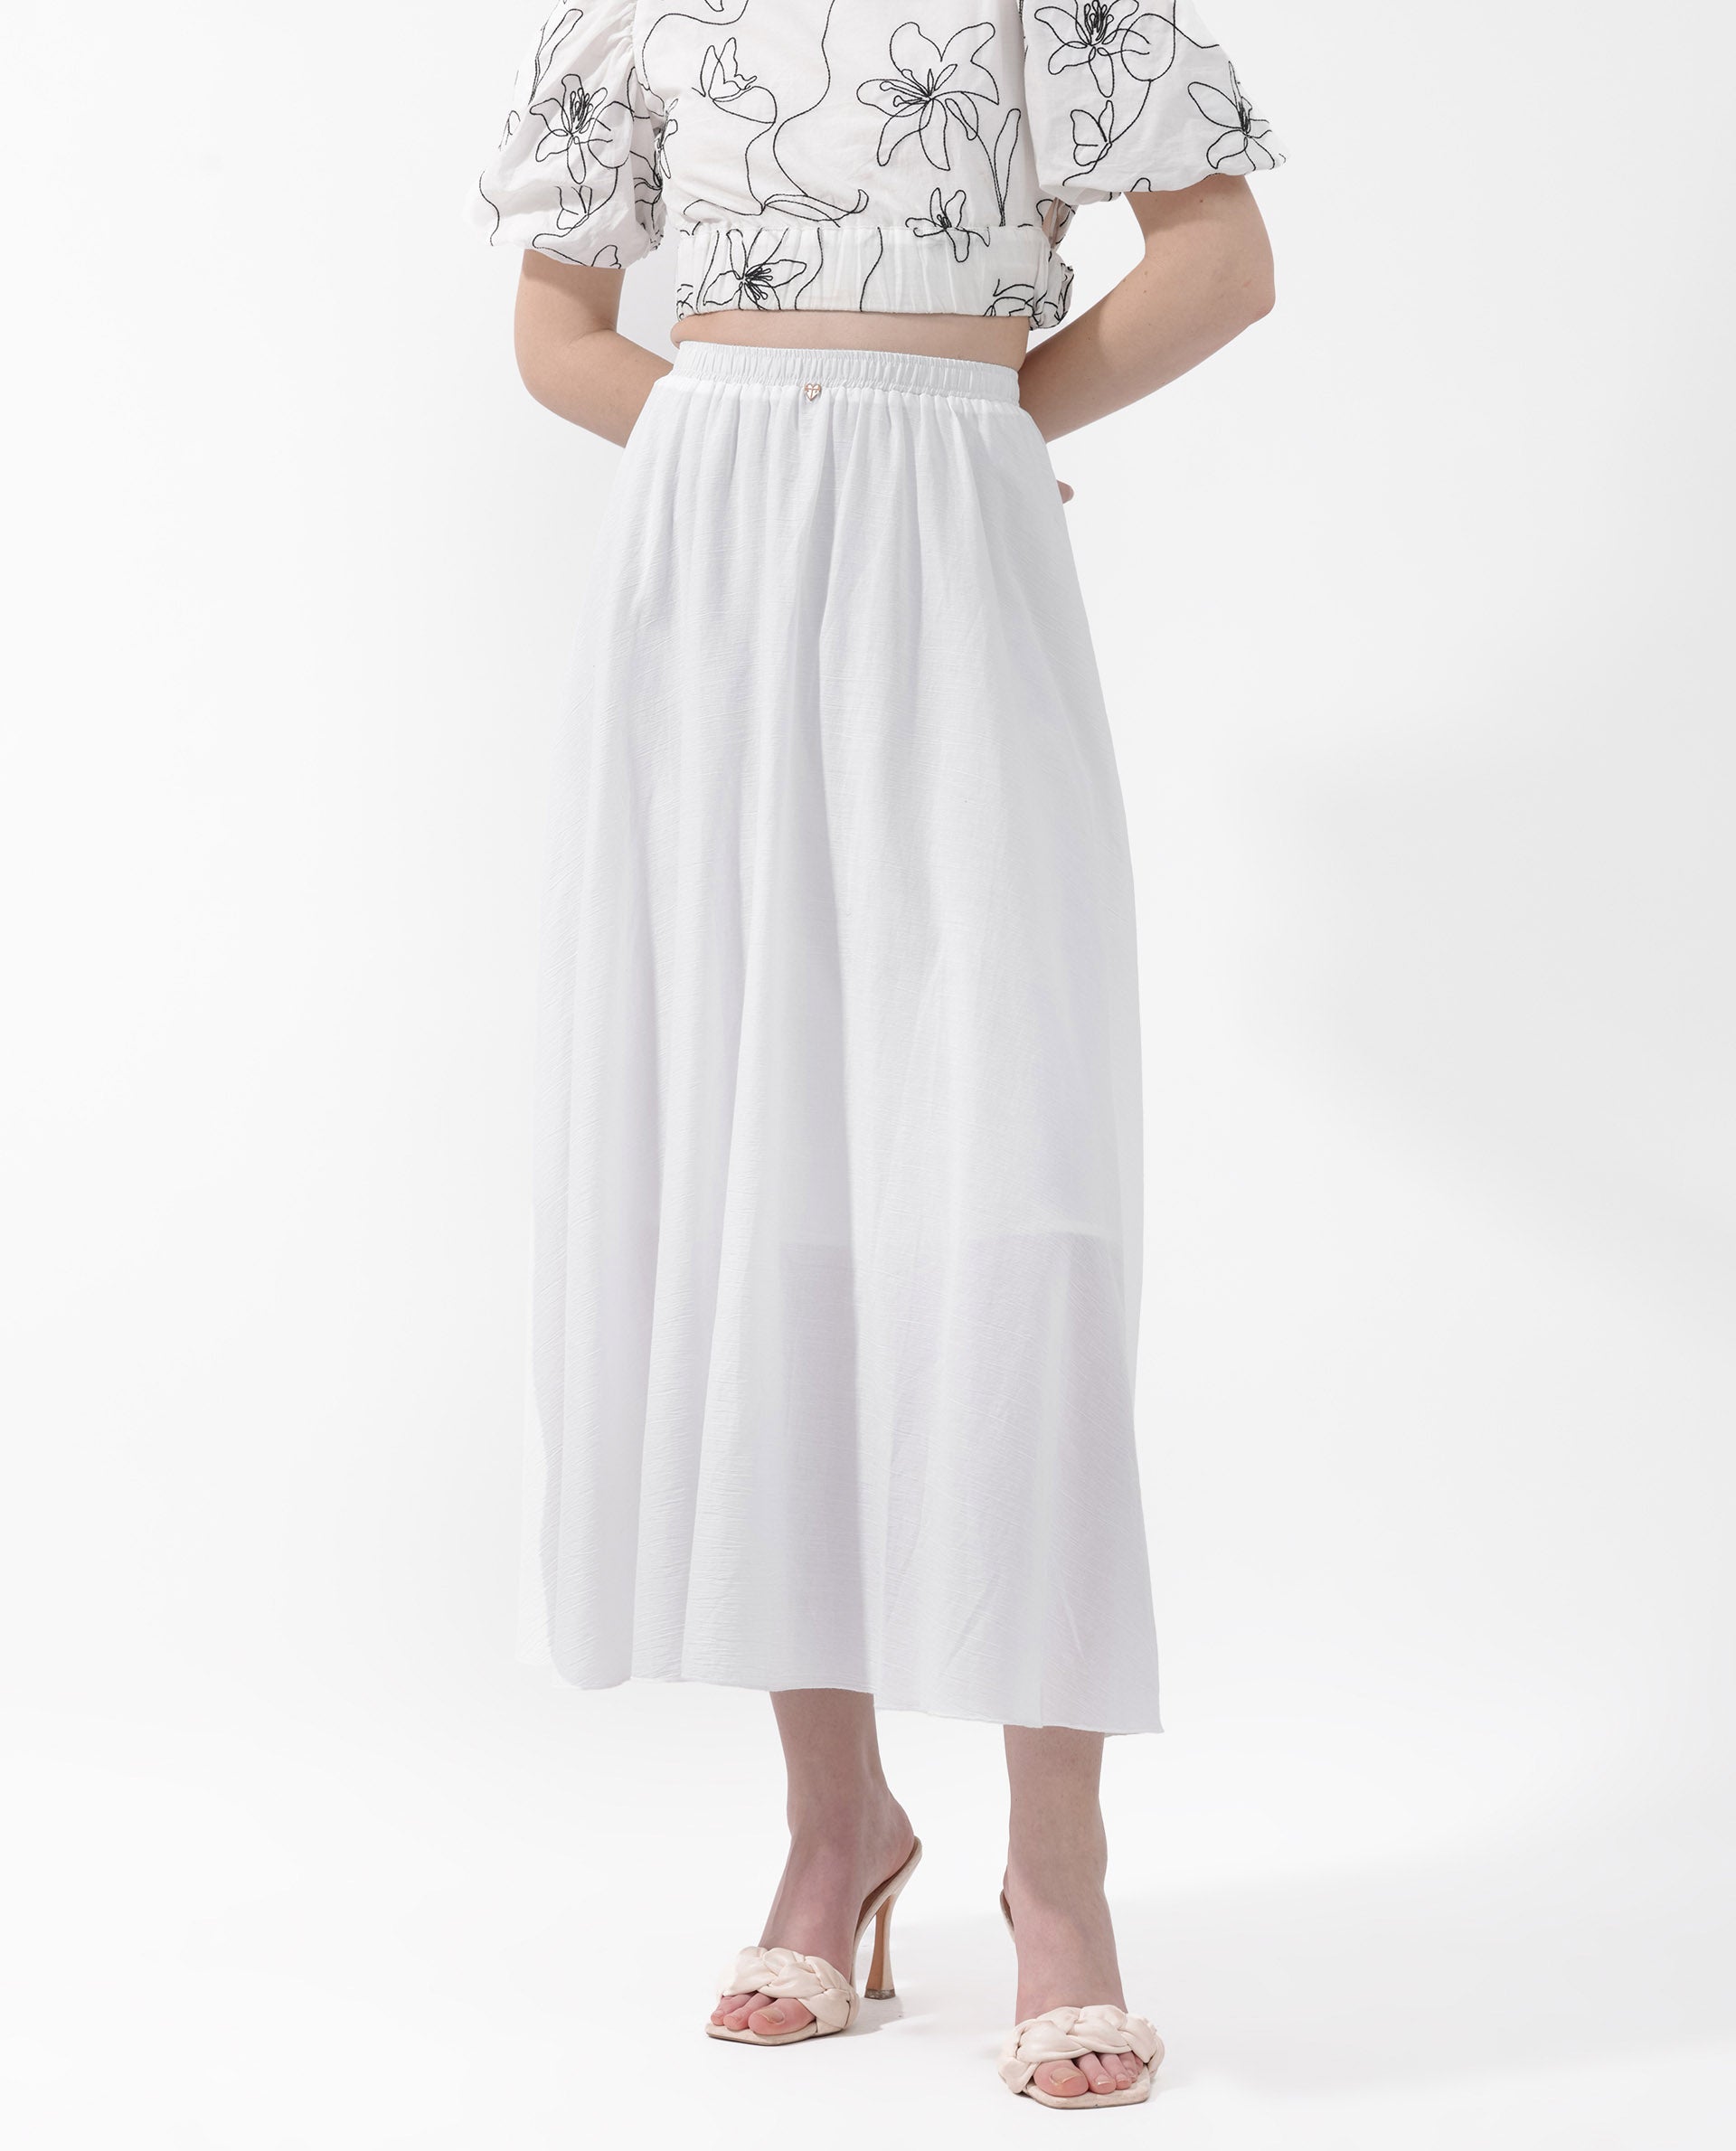 Plain White Skirt